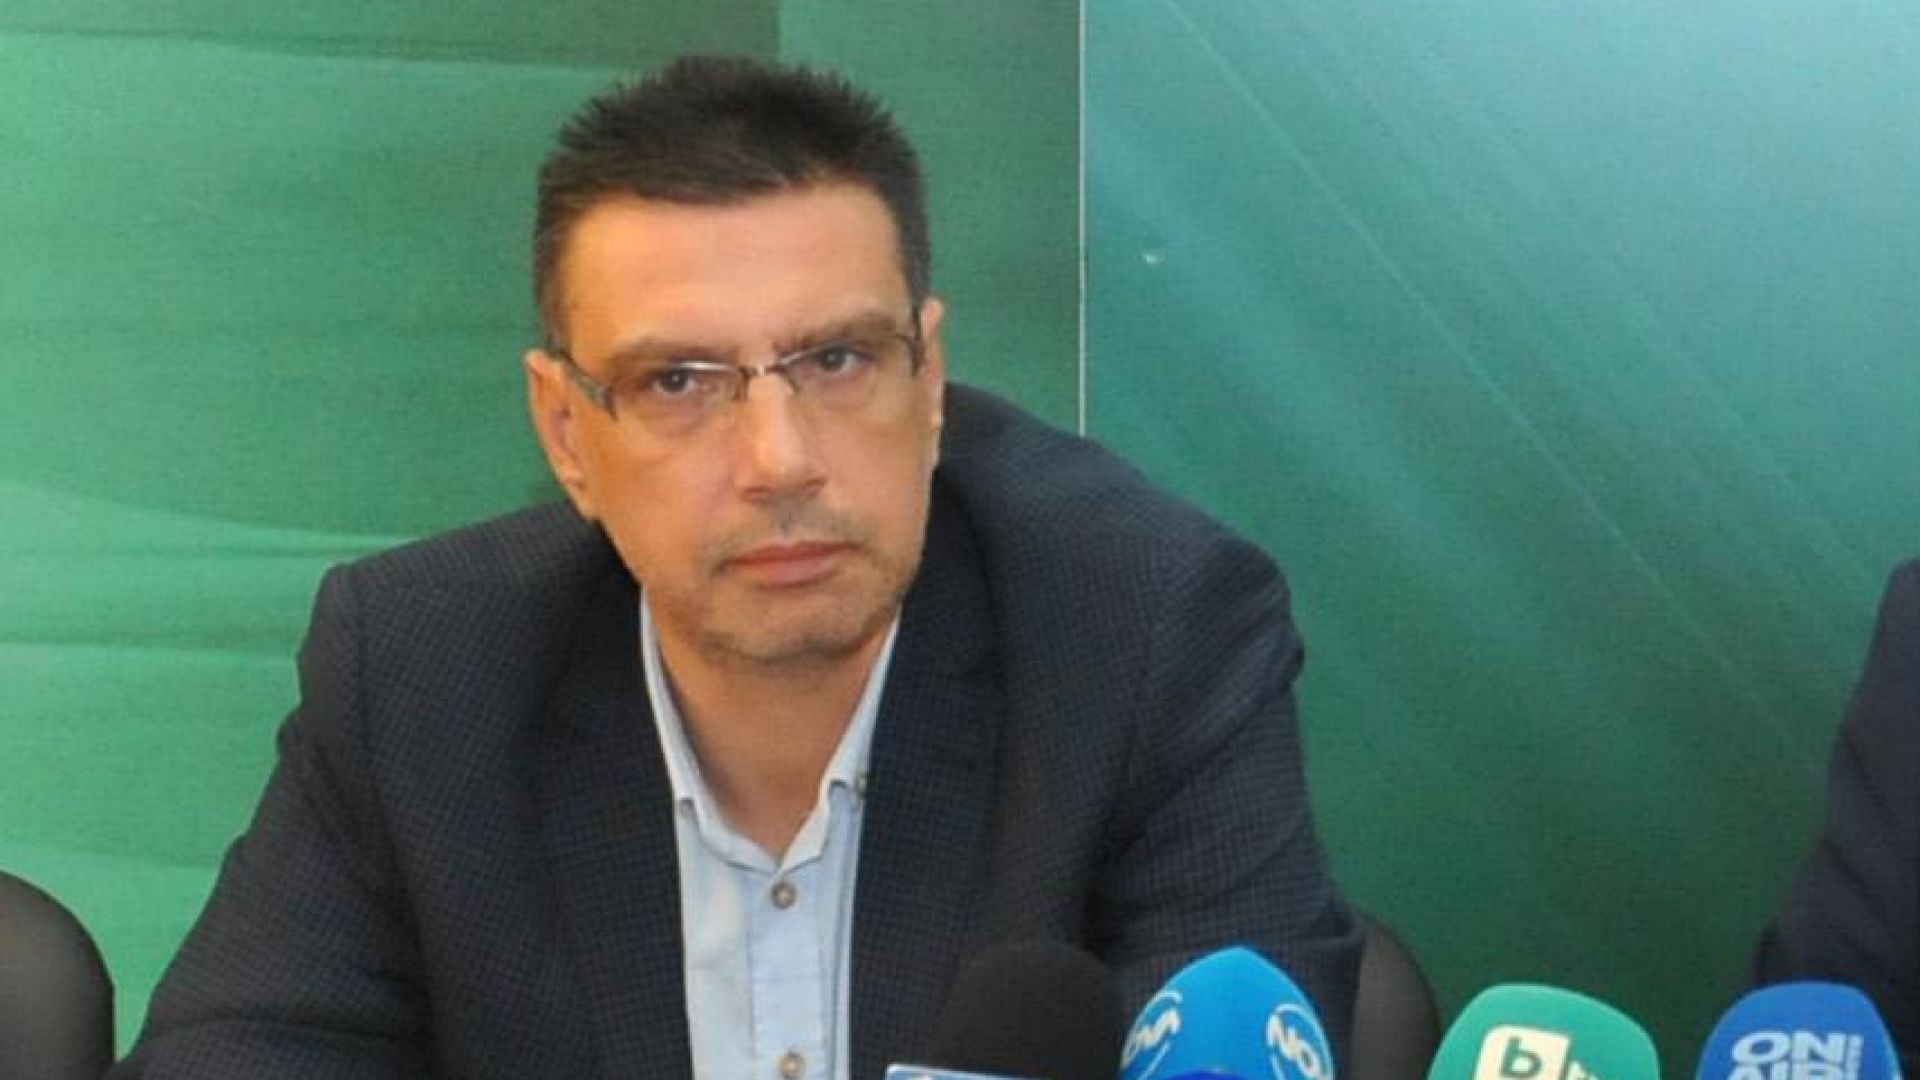 Георги Чинев е преизбран единодушно за окръжен прокурор на Бургас